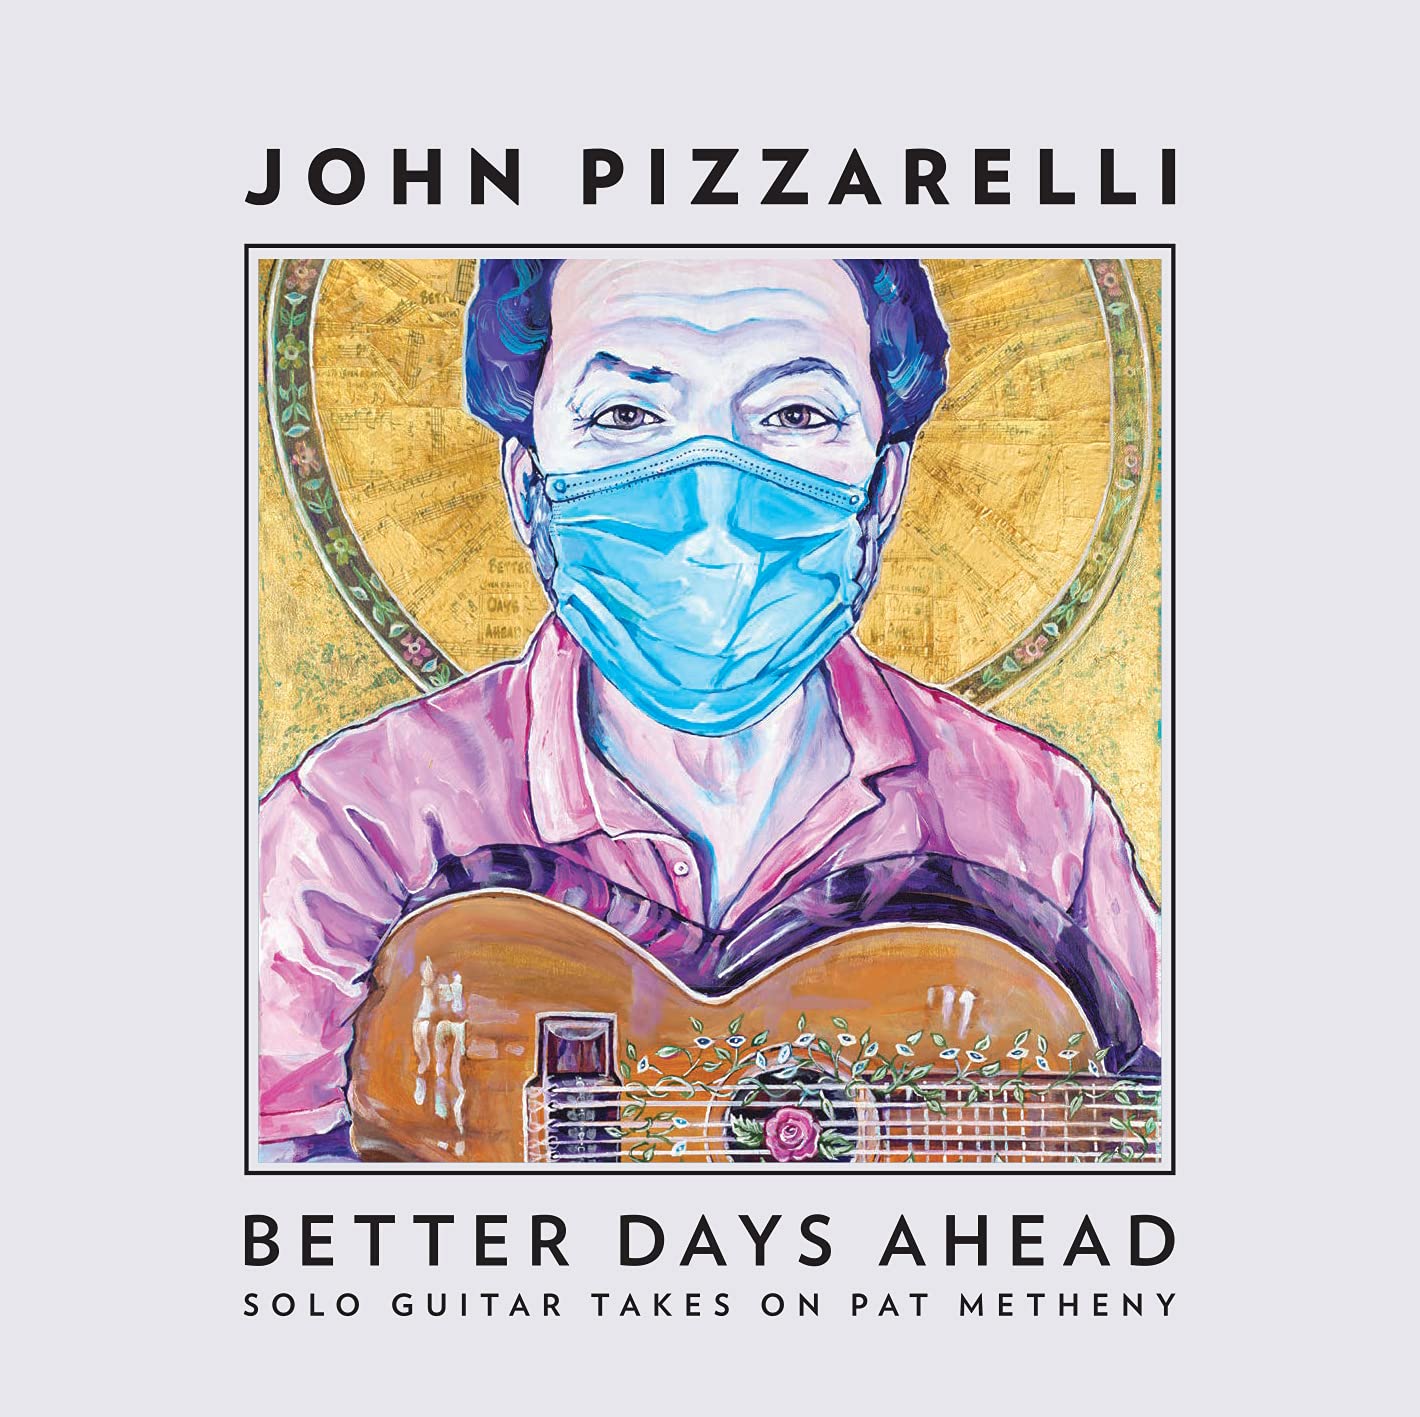 Audio Cd John Pizzarelli - Better Days Ahead (Solo Guitar Takes Pat Metheny) NUOVO SIGILLATO, EDIZIONE DEL 12/05/2021 SUBITO DISPONIBILE